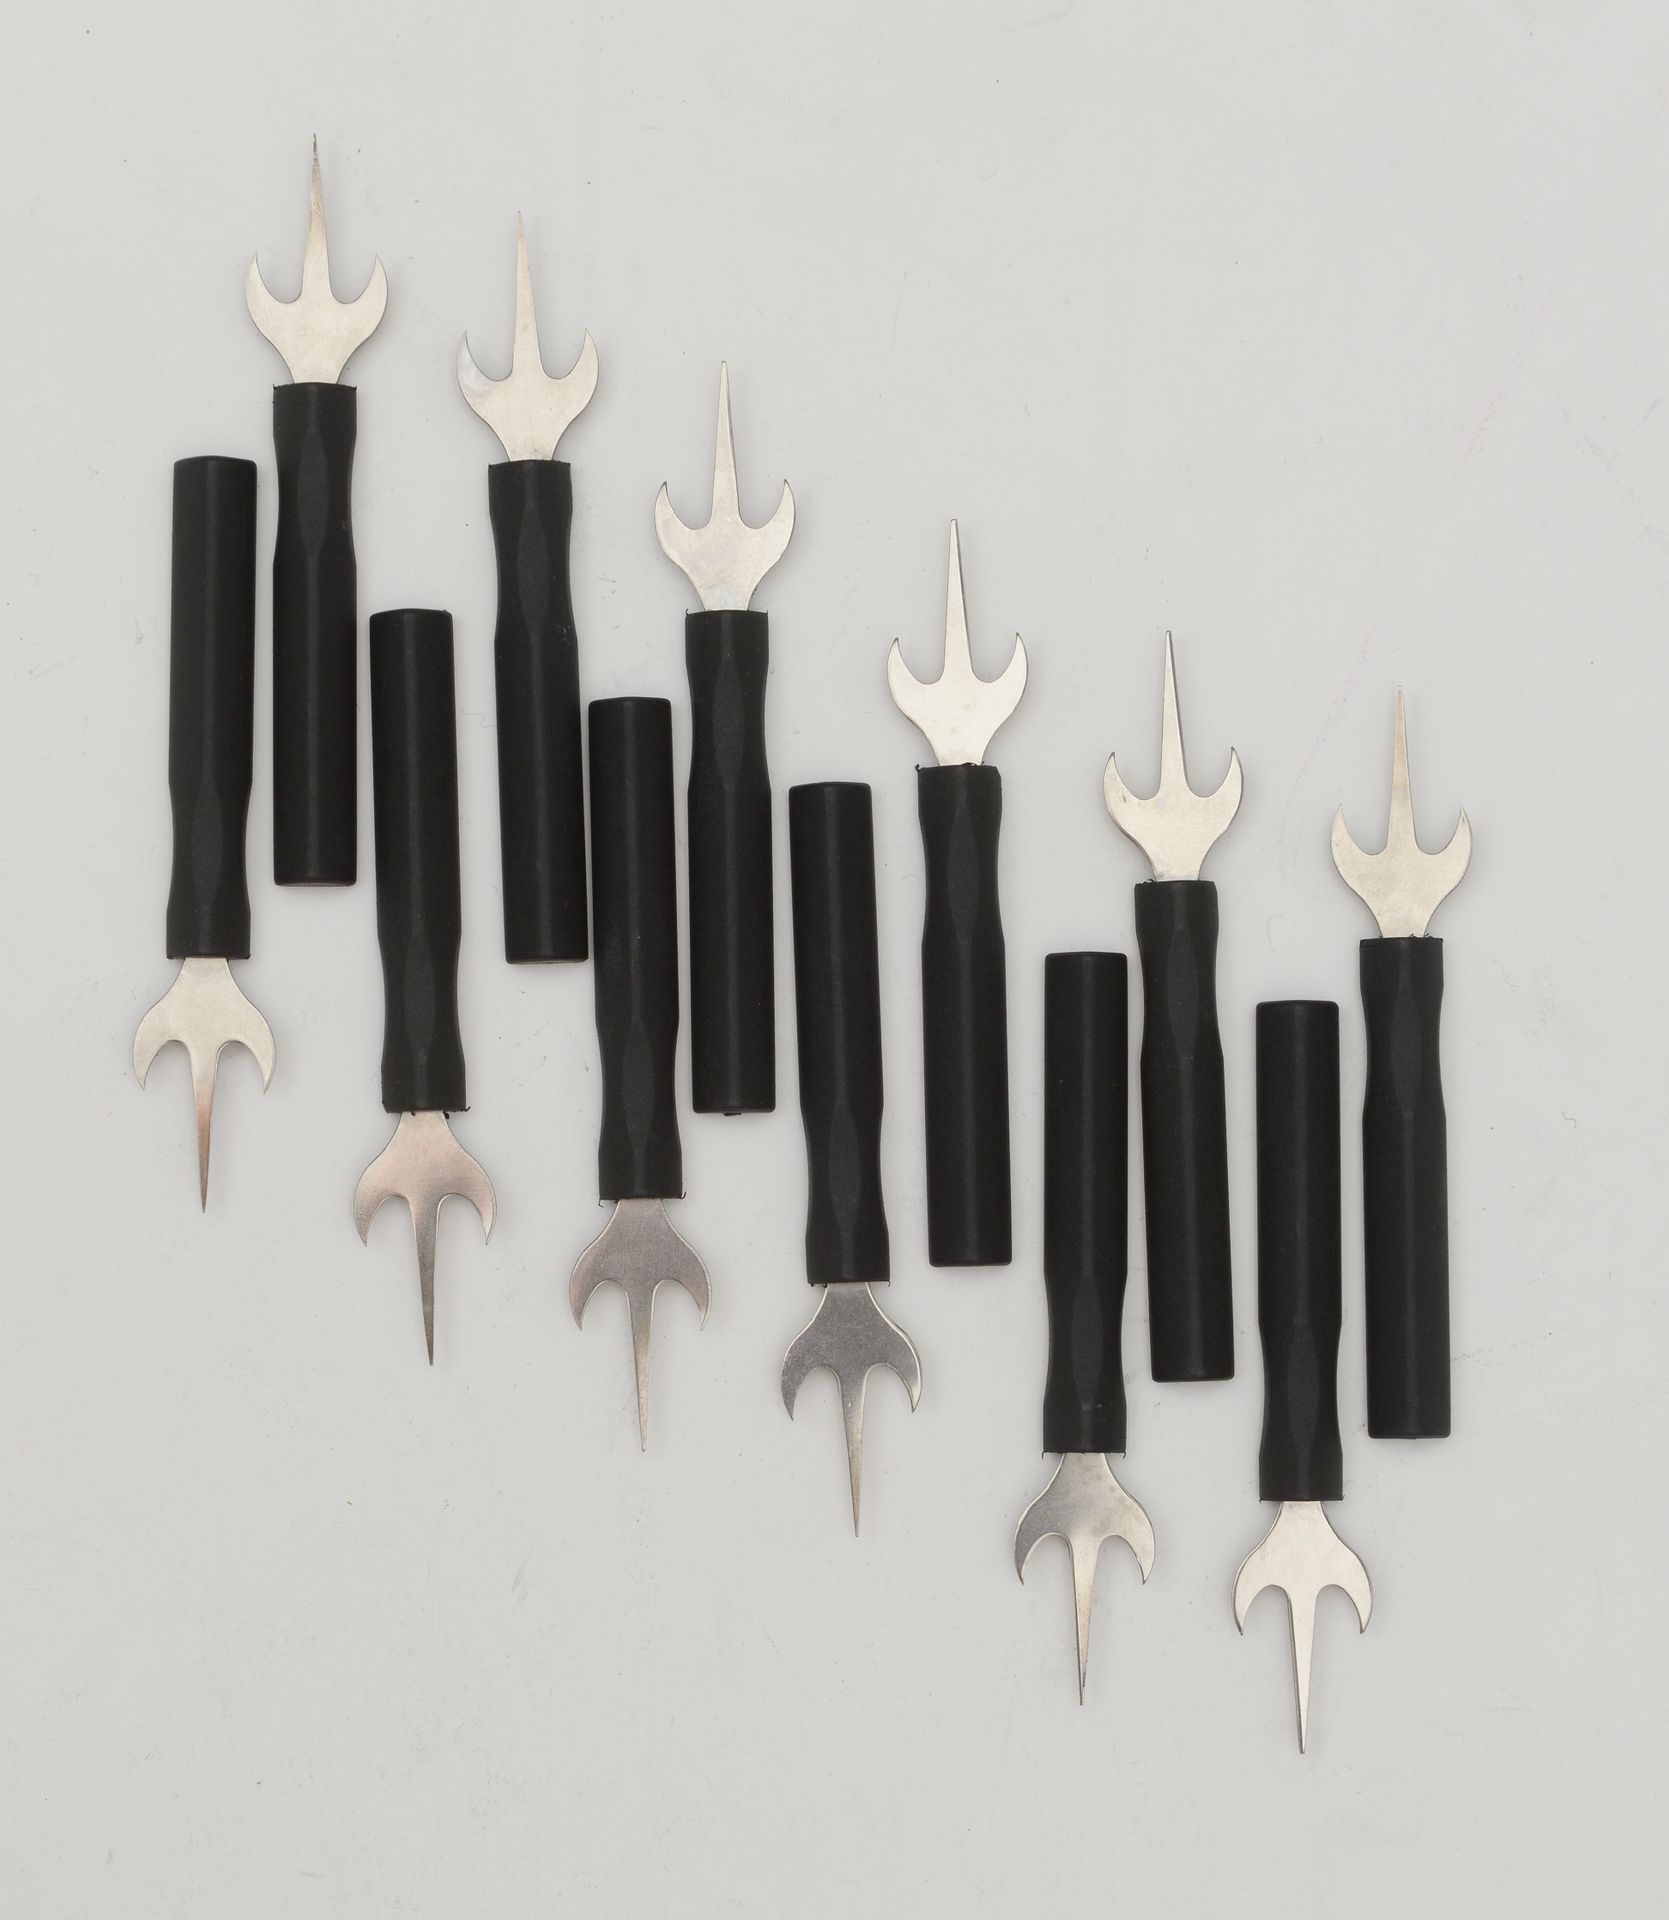 Null 十二个玉米镐，三叉戟为钢制，手柄为黑色成分。
德国，20世纪。
长度：9,8厘米